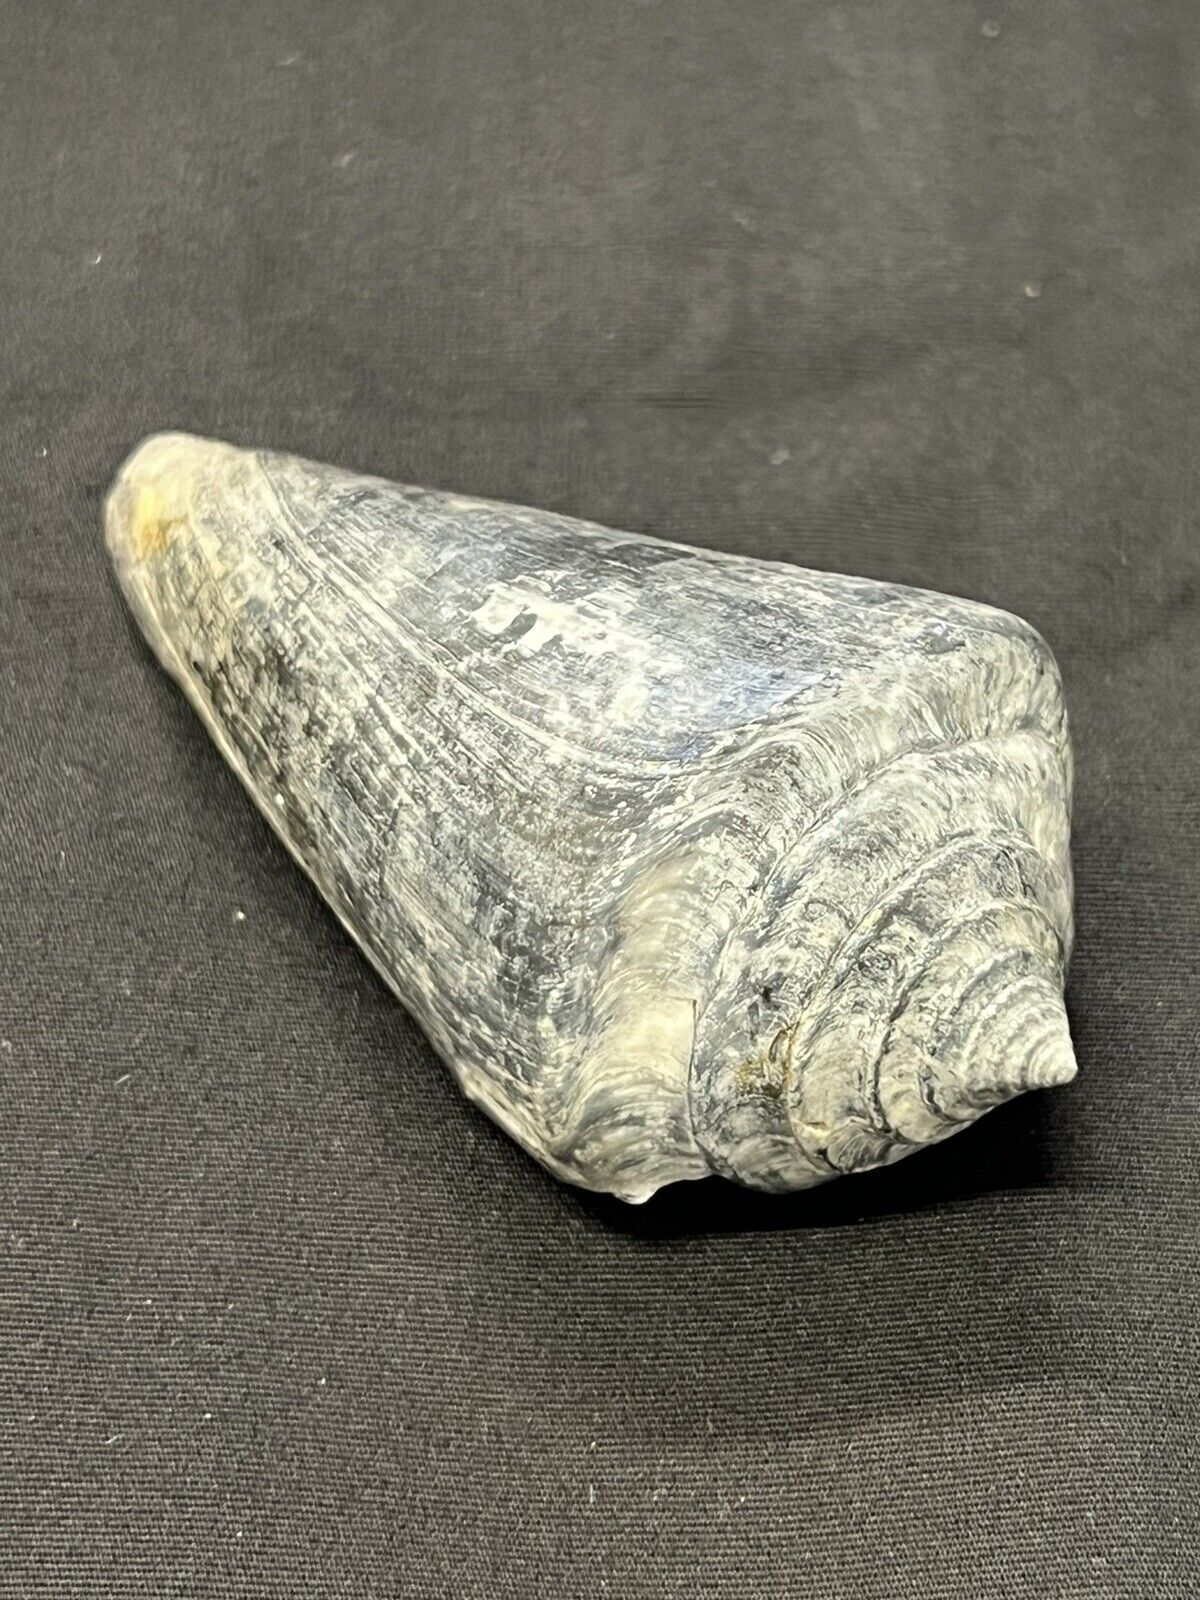 RARE Fossilized CONE Shell From Central Florida, Pliocene Era.